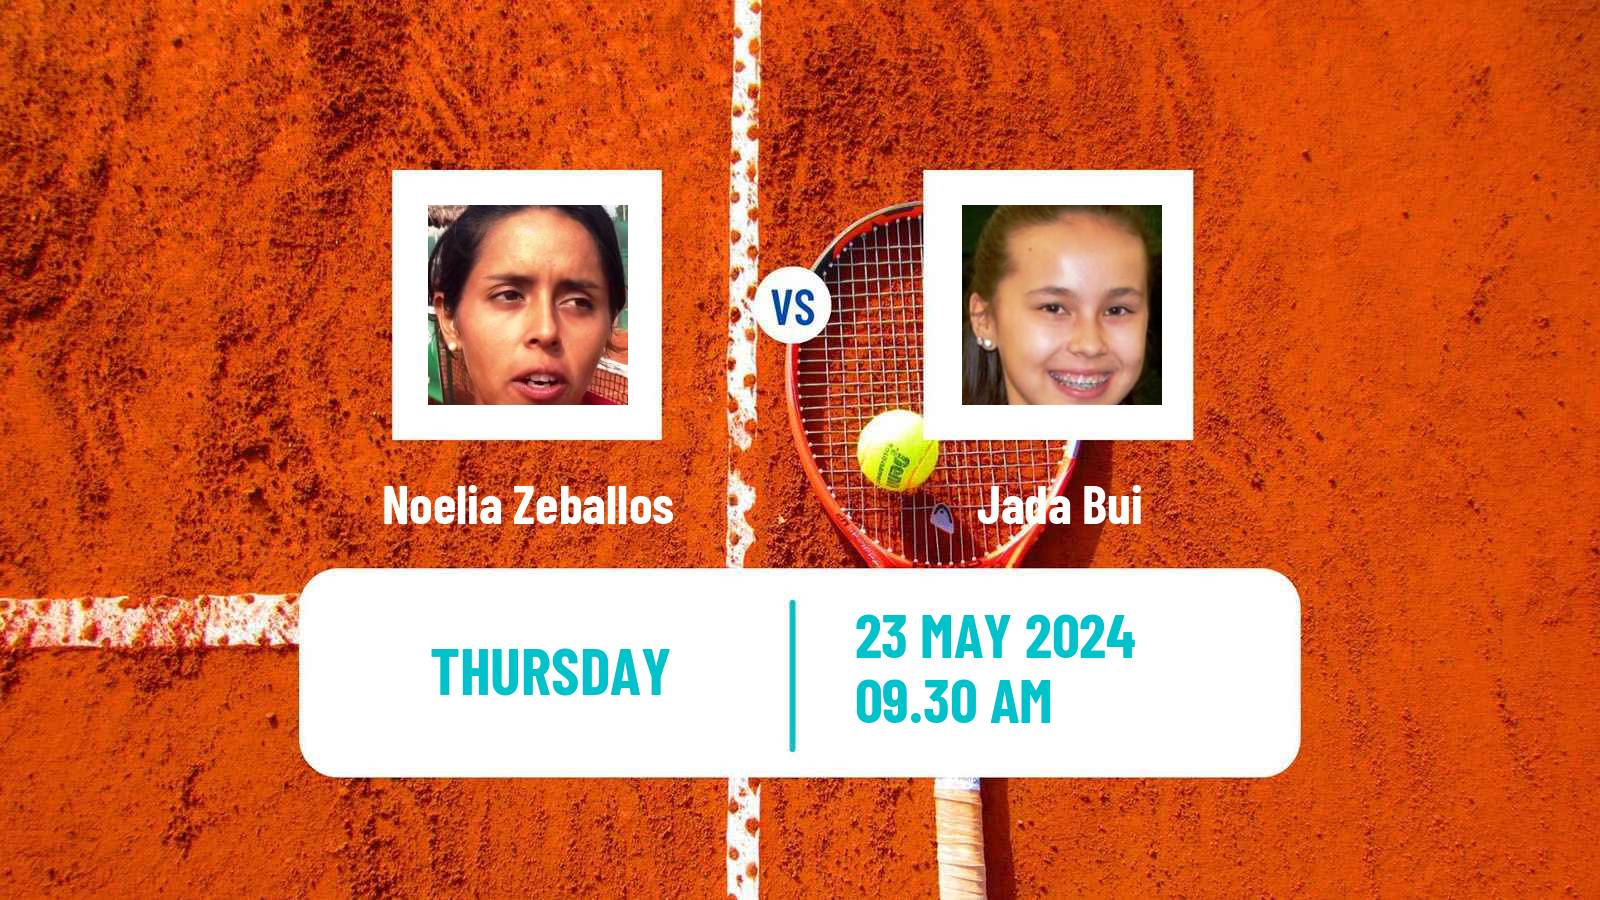 Tennis ITF W35 Santo Domingo 3 Women Noelia Zeballos - Jada Bui